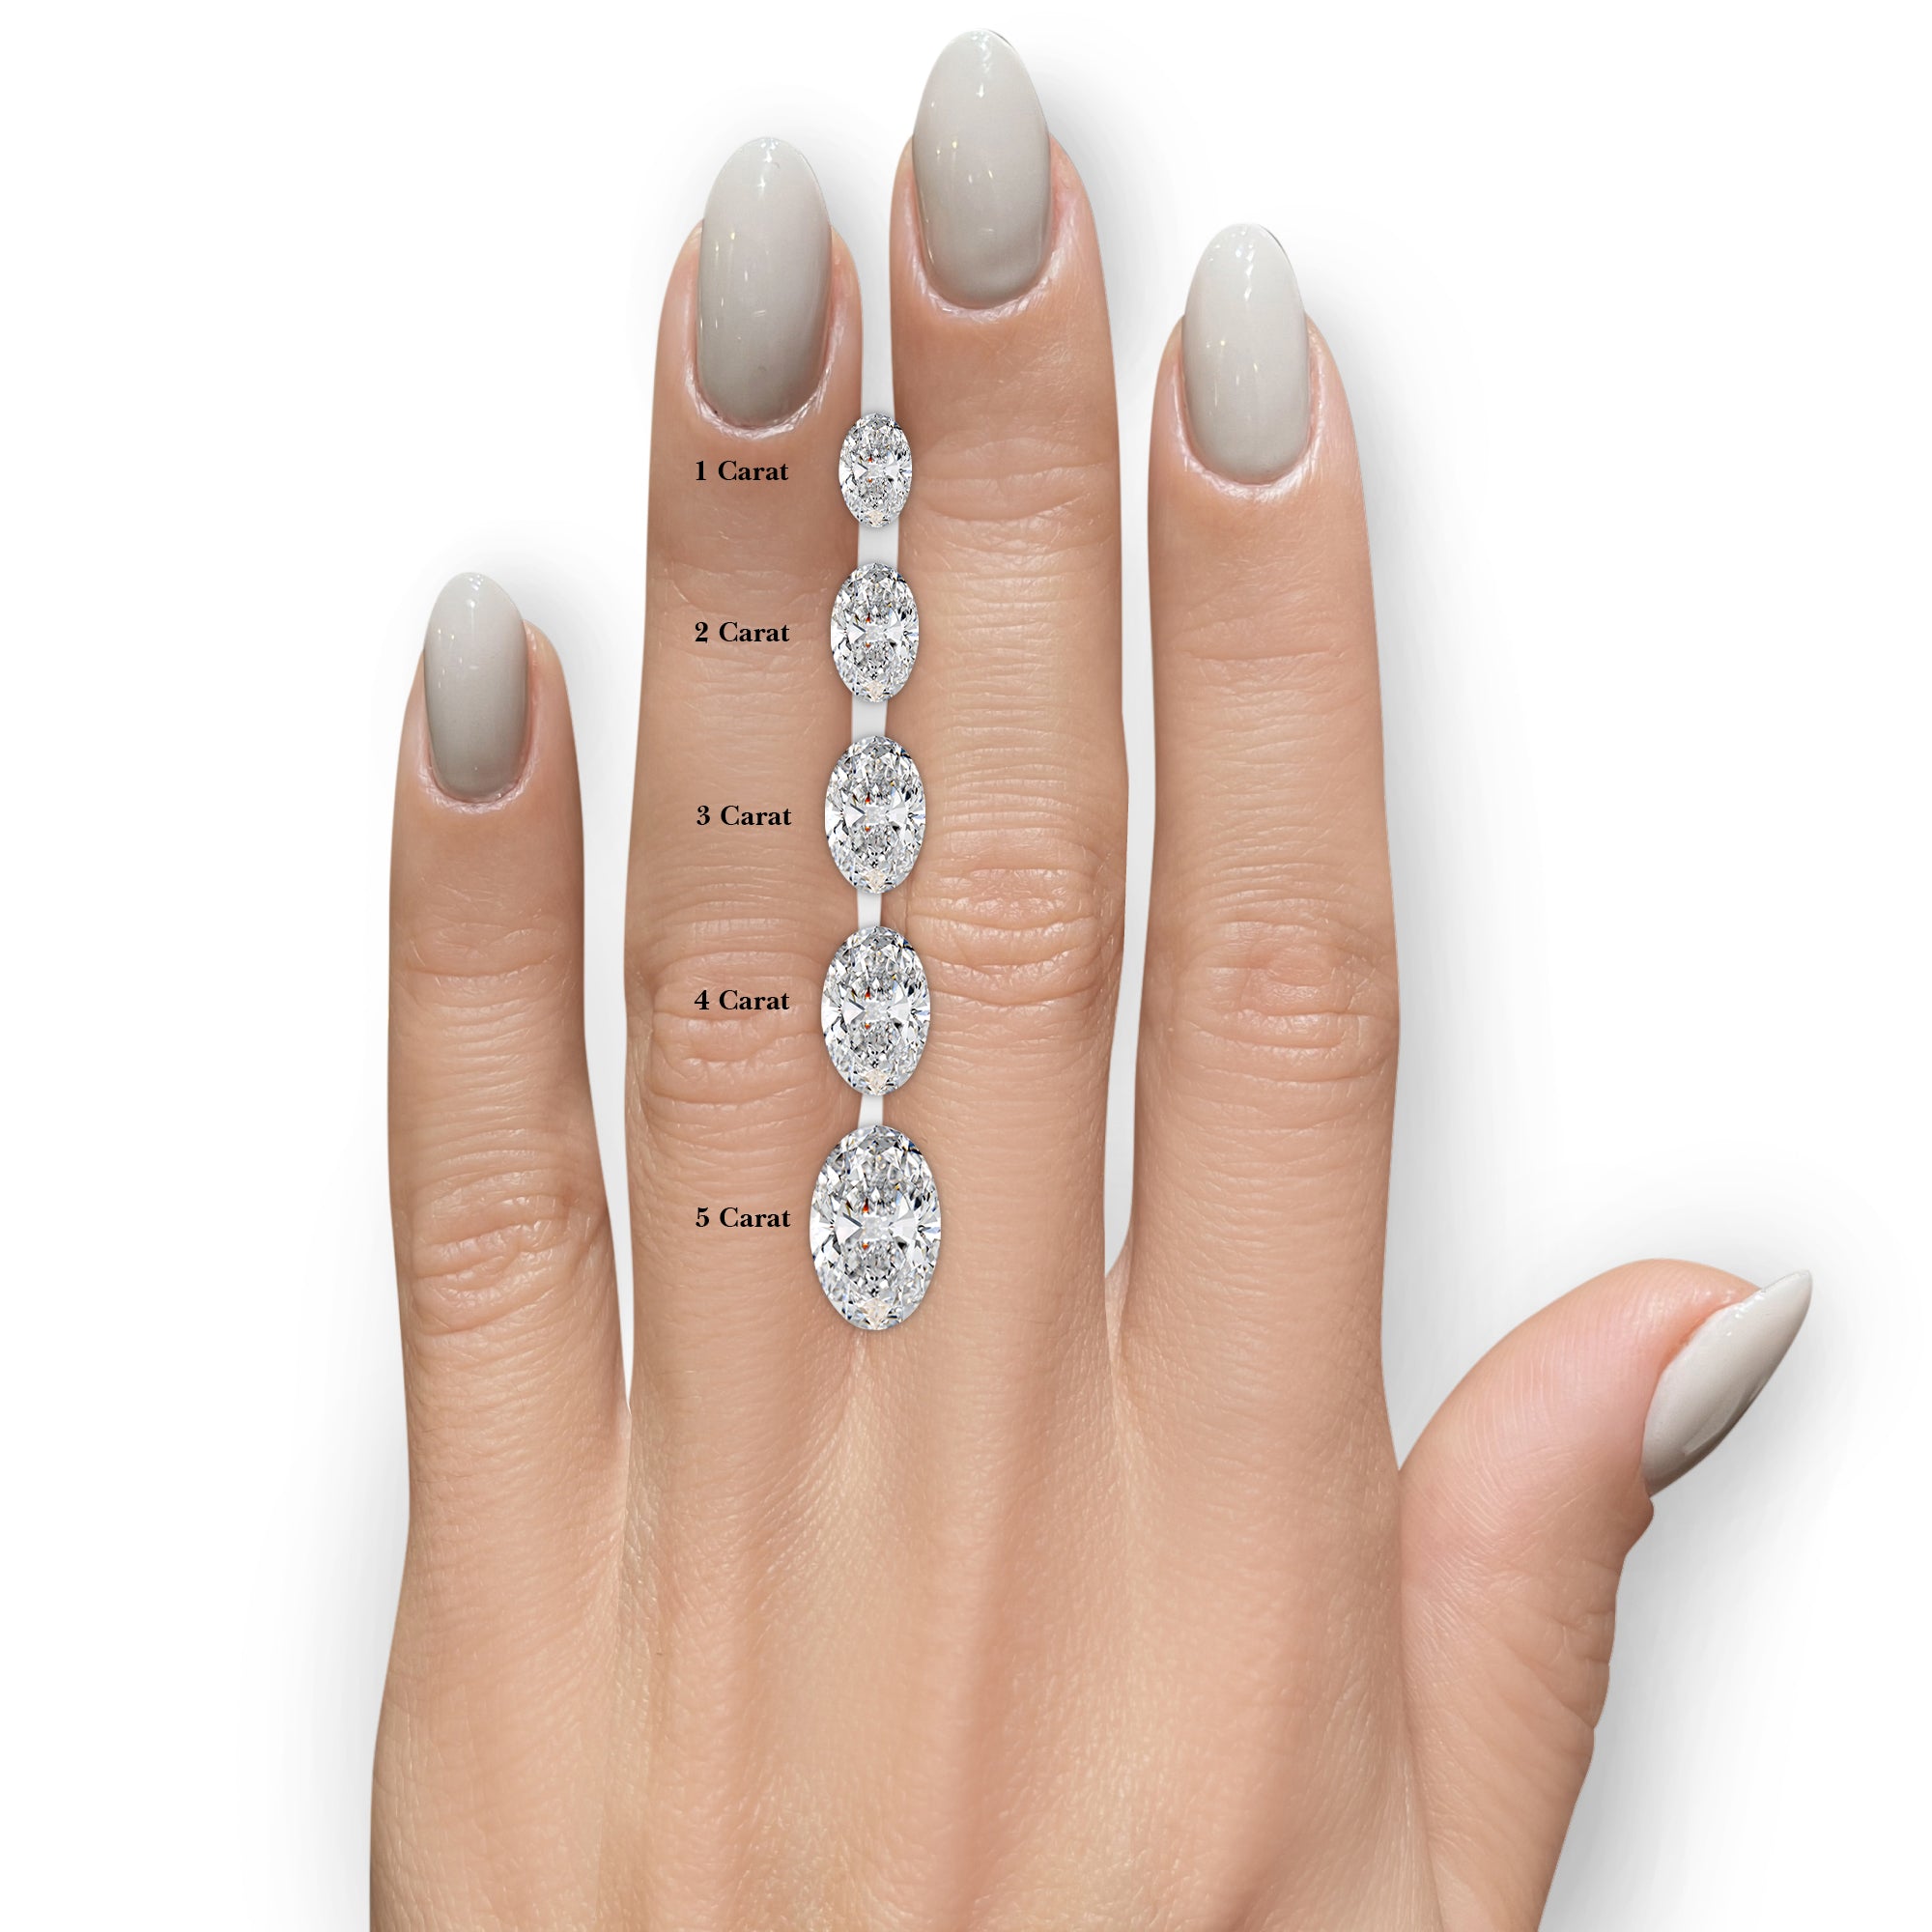 Harriet Diamond Engagement Ring -14K White Gold